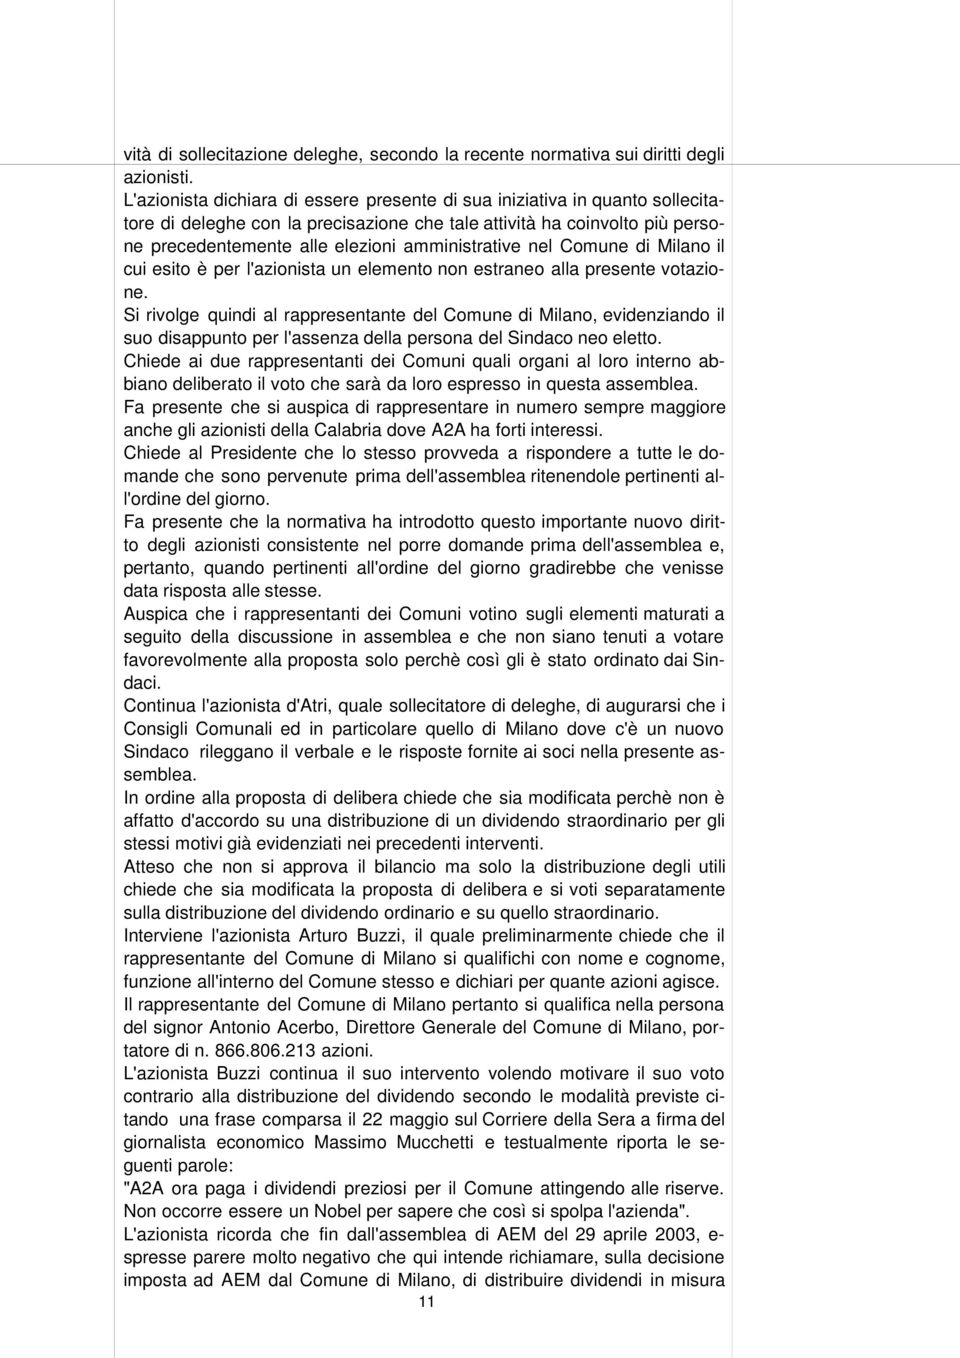 amministrative nel Comune di Milano il cui esito è per l'azionista un elemento non estraneo alla presente votazione.